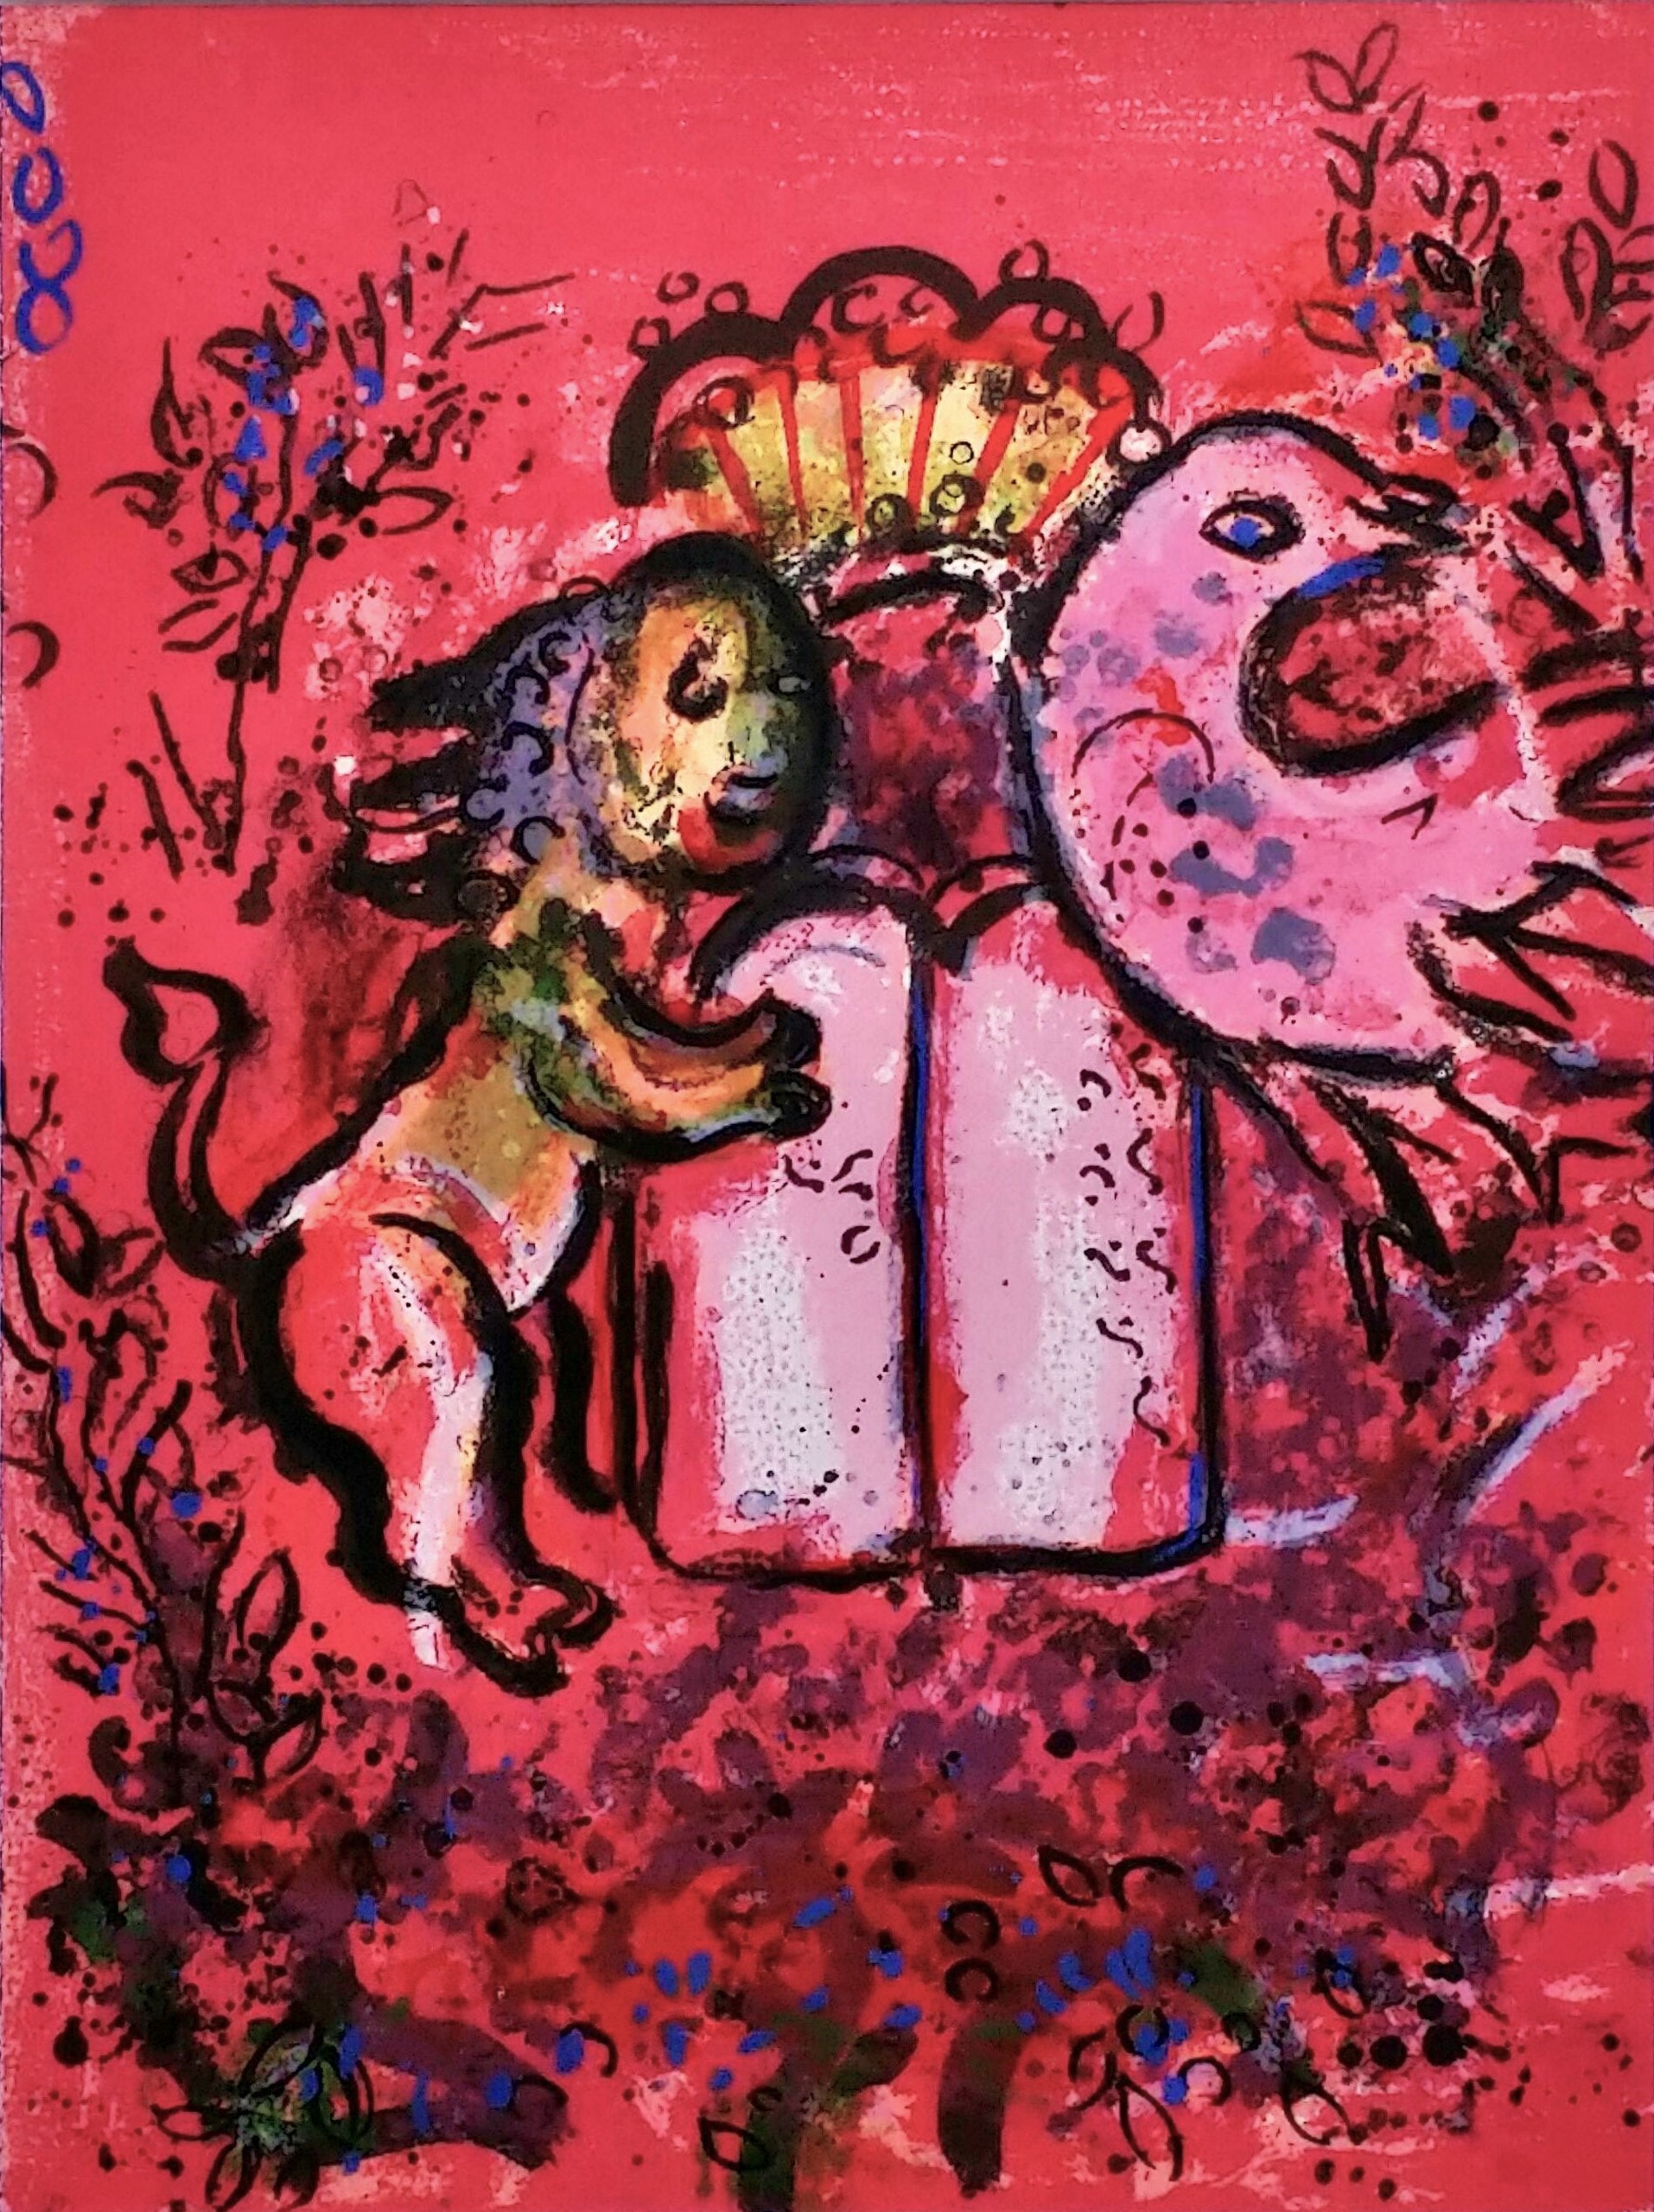 マルク シャガール 赤いライオン リトグラフ 画廊アートエミュウ Art Emy ユトリロ ジャンセン フランス美術 プラハ美術 現代アート 絵画買取